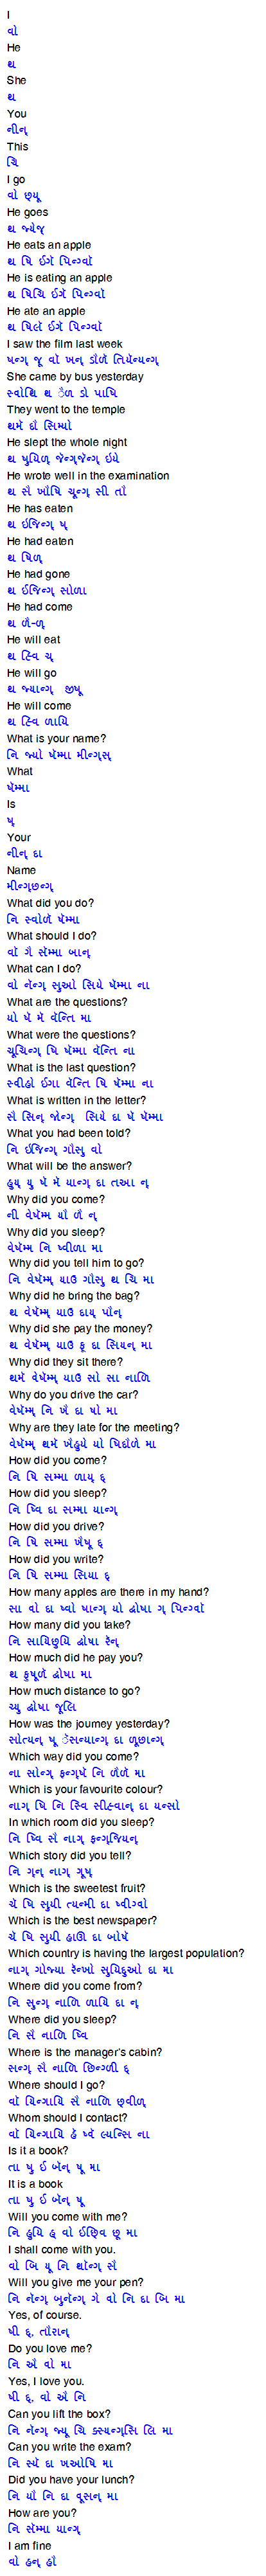 Learn Chinese through Gujarati